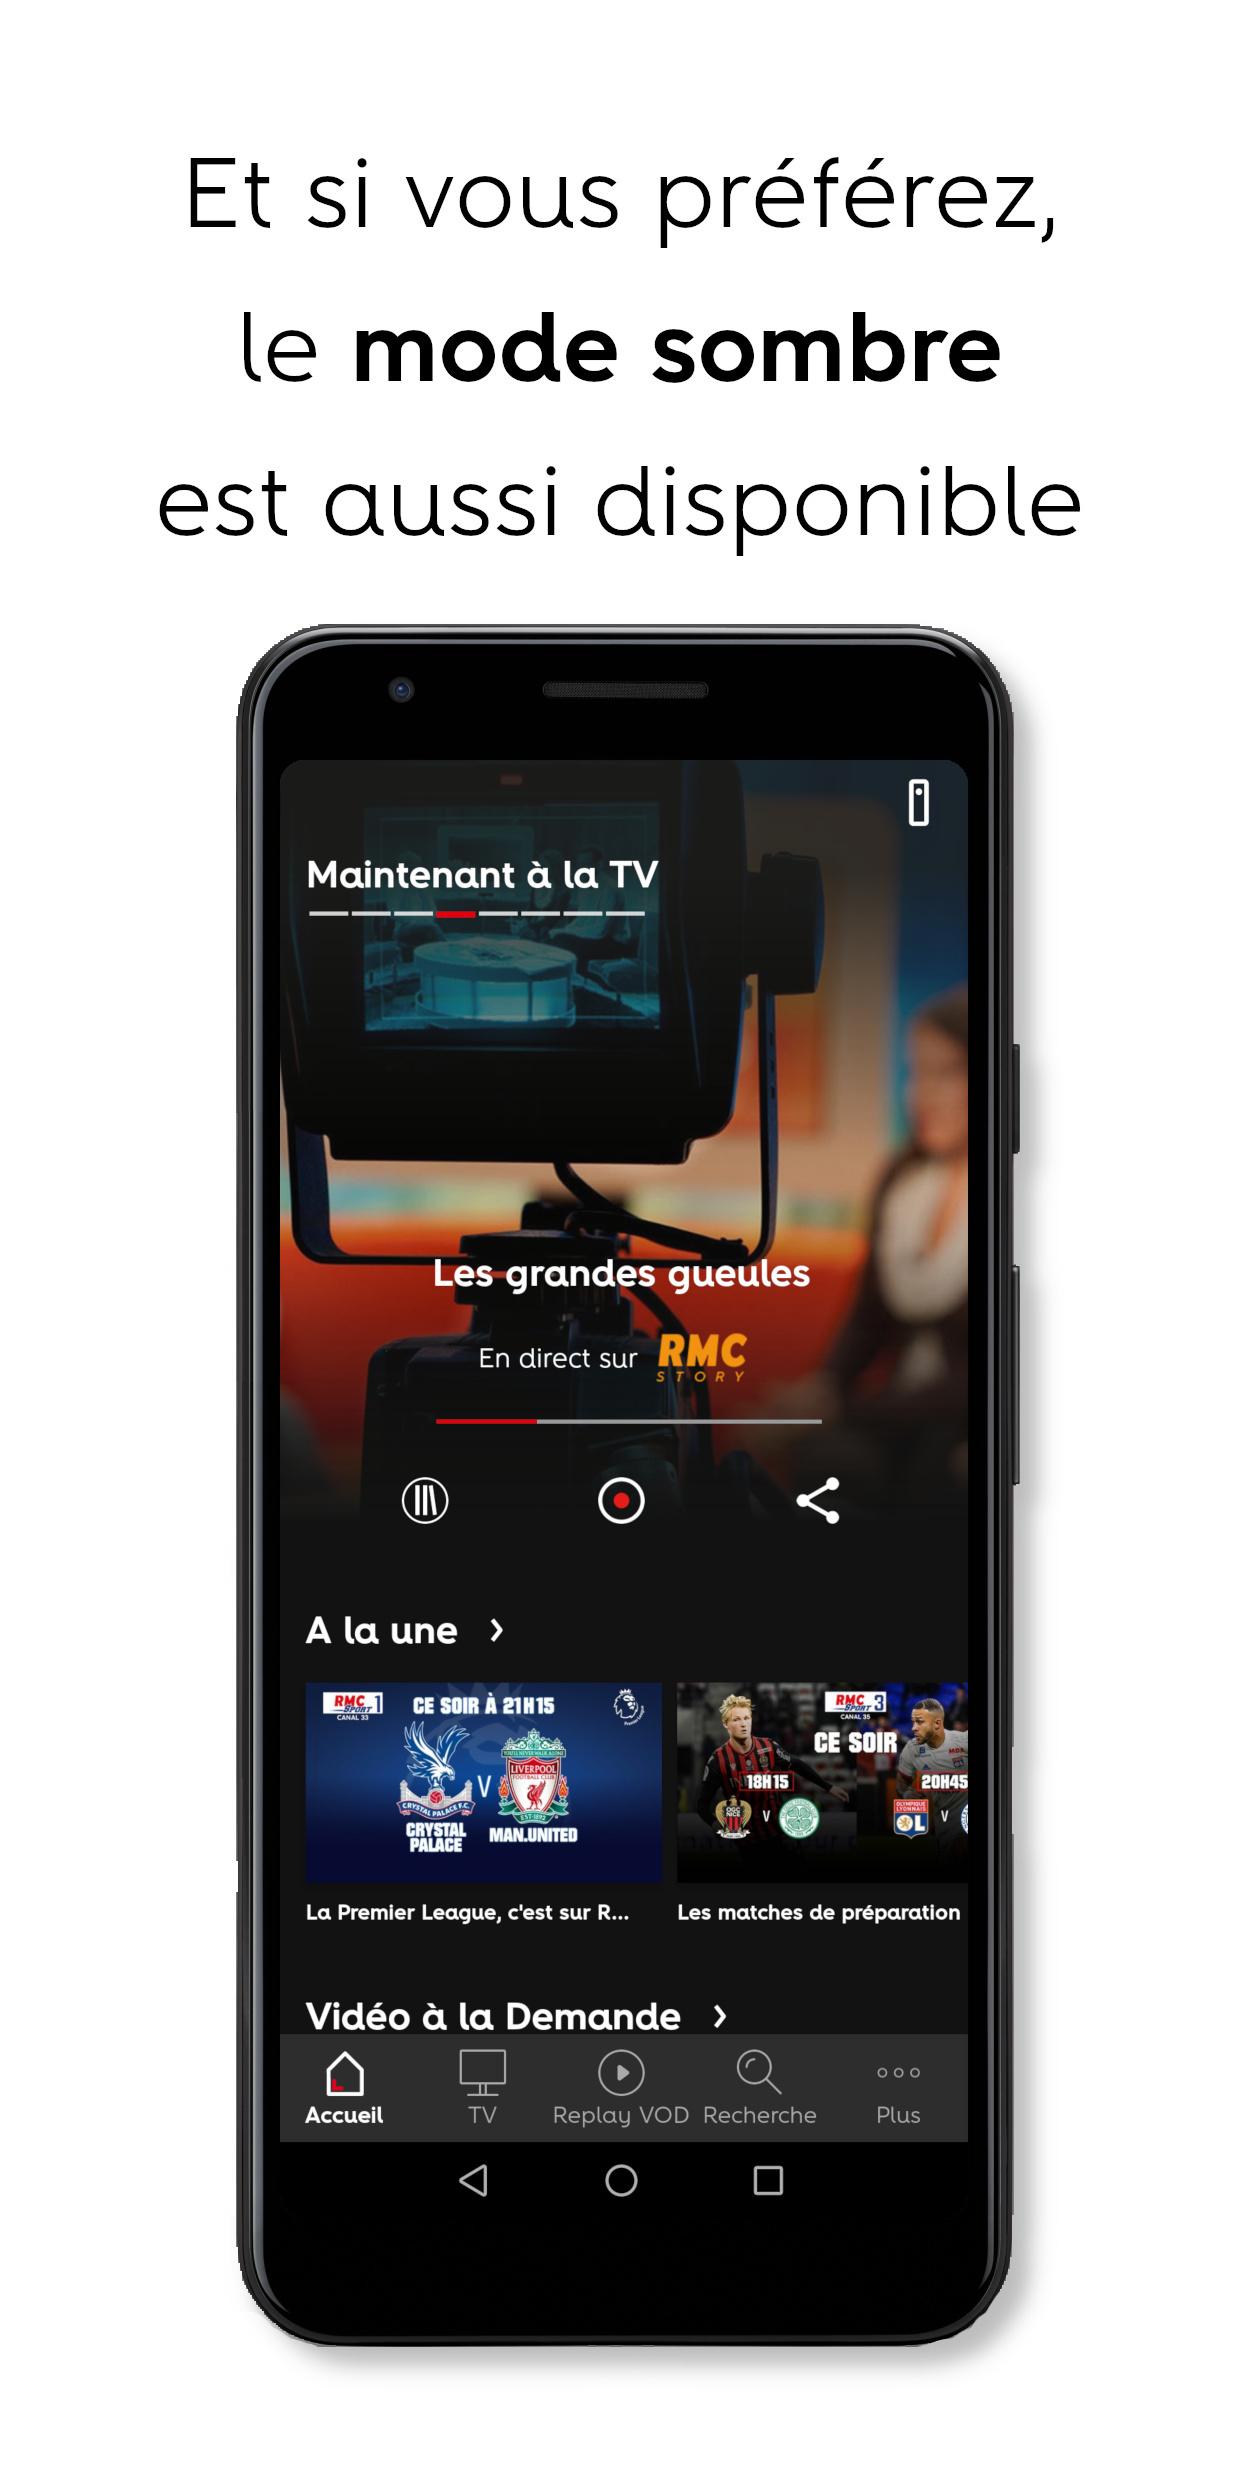 Sfr Tv 8 Sur Android Tv SFR TV 8 pour Android - Téléchargez l'APK